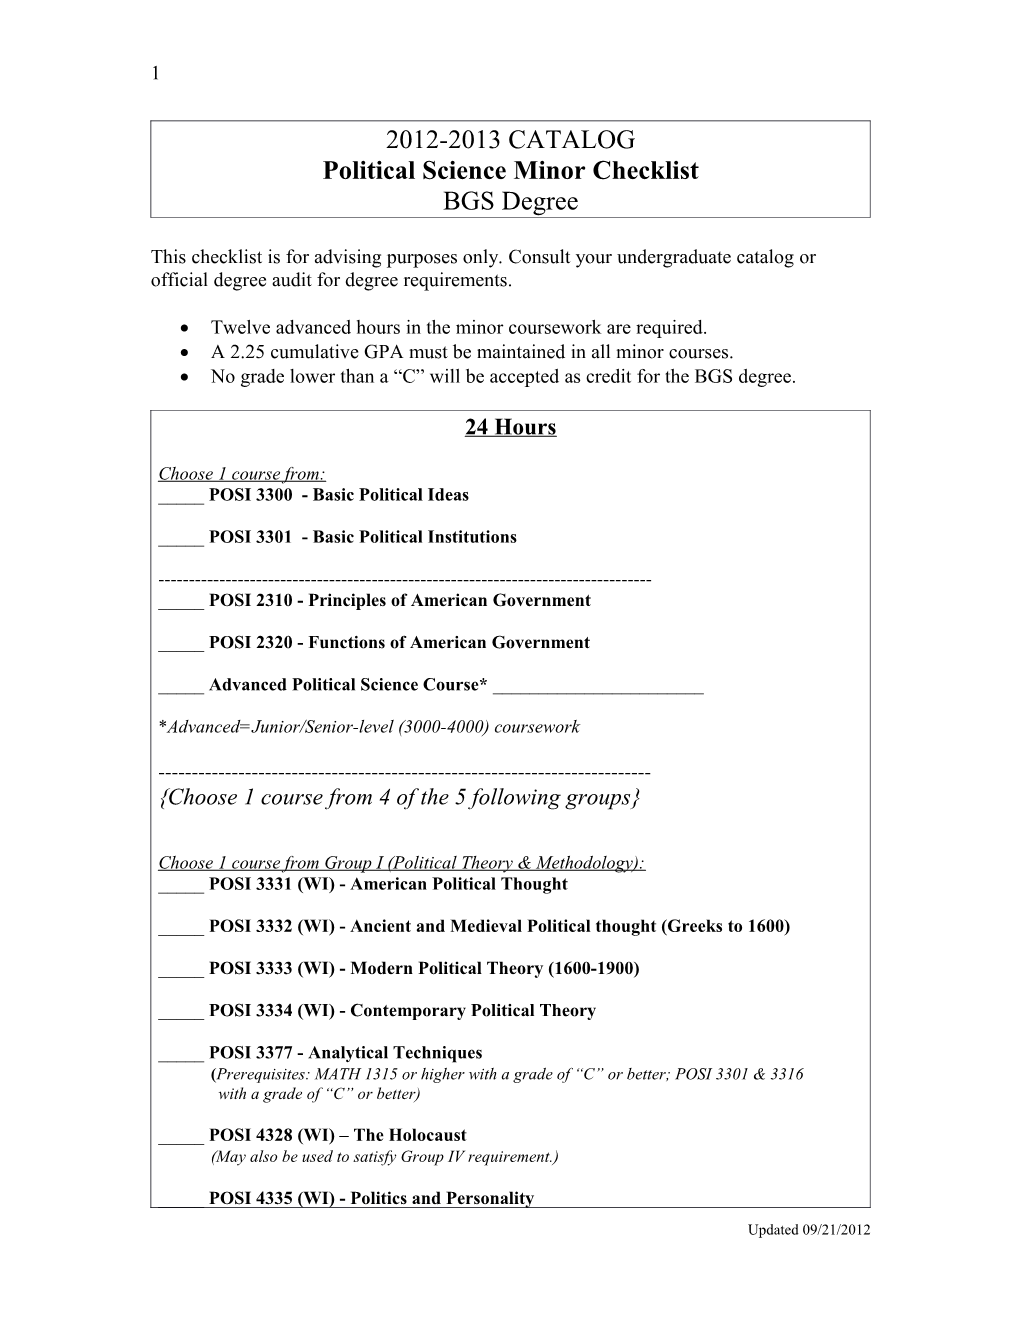 Political Science Minor Checklist